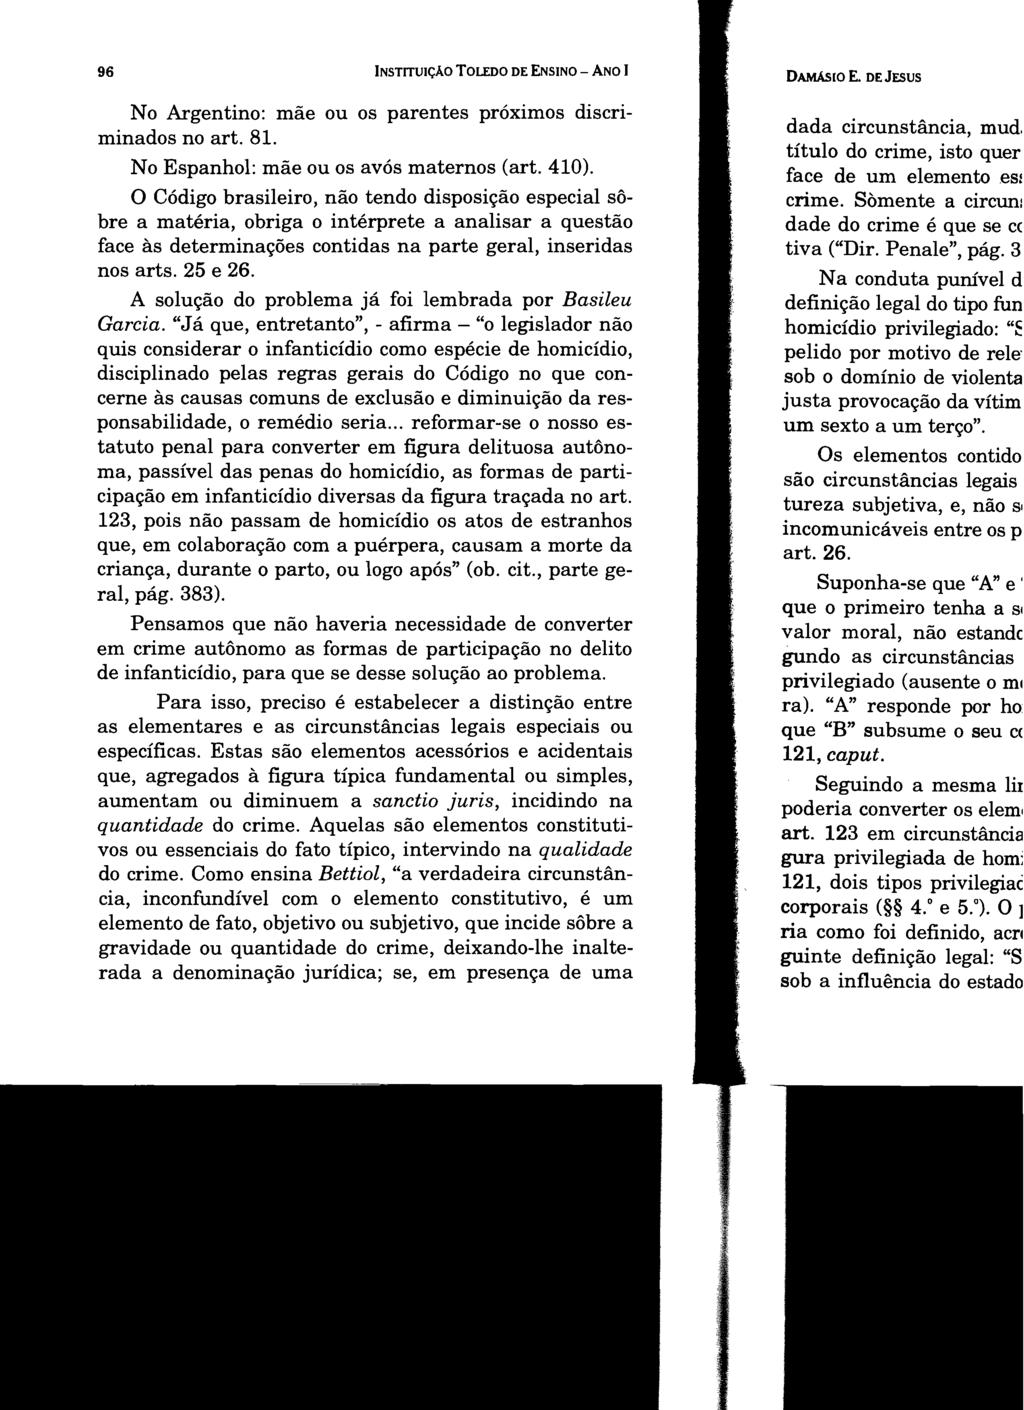 96 INSTITUIÇÃO TOLEDO DE ENSINO - ANO I No Argentino: mãe ou os parentes próximos discriminados no art. 8I. No Espanhol: mãe ou os avós maternos (art. 410).